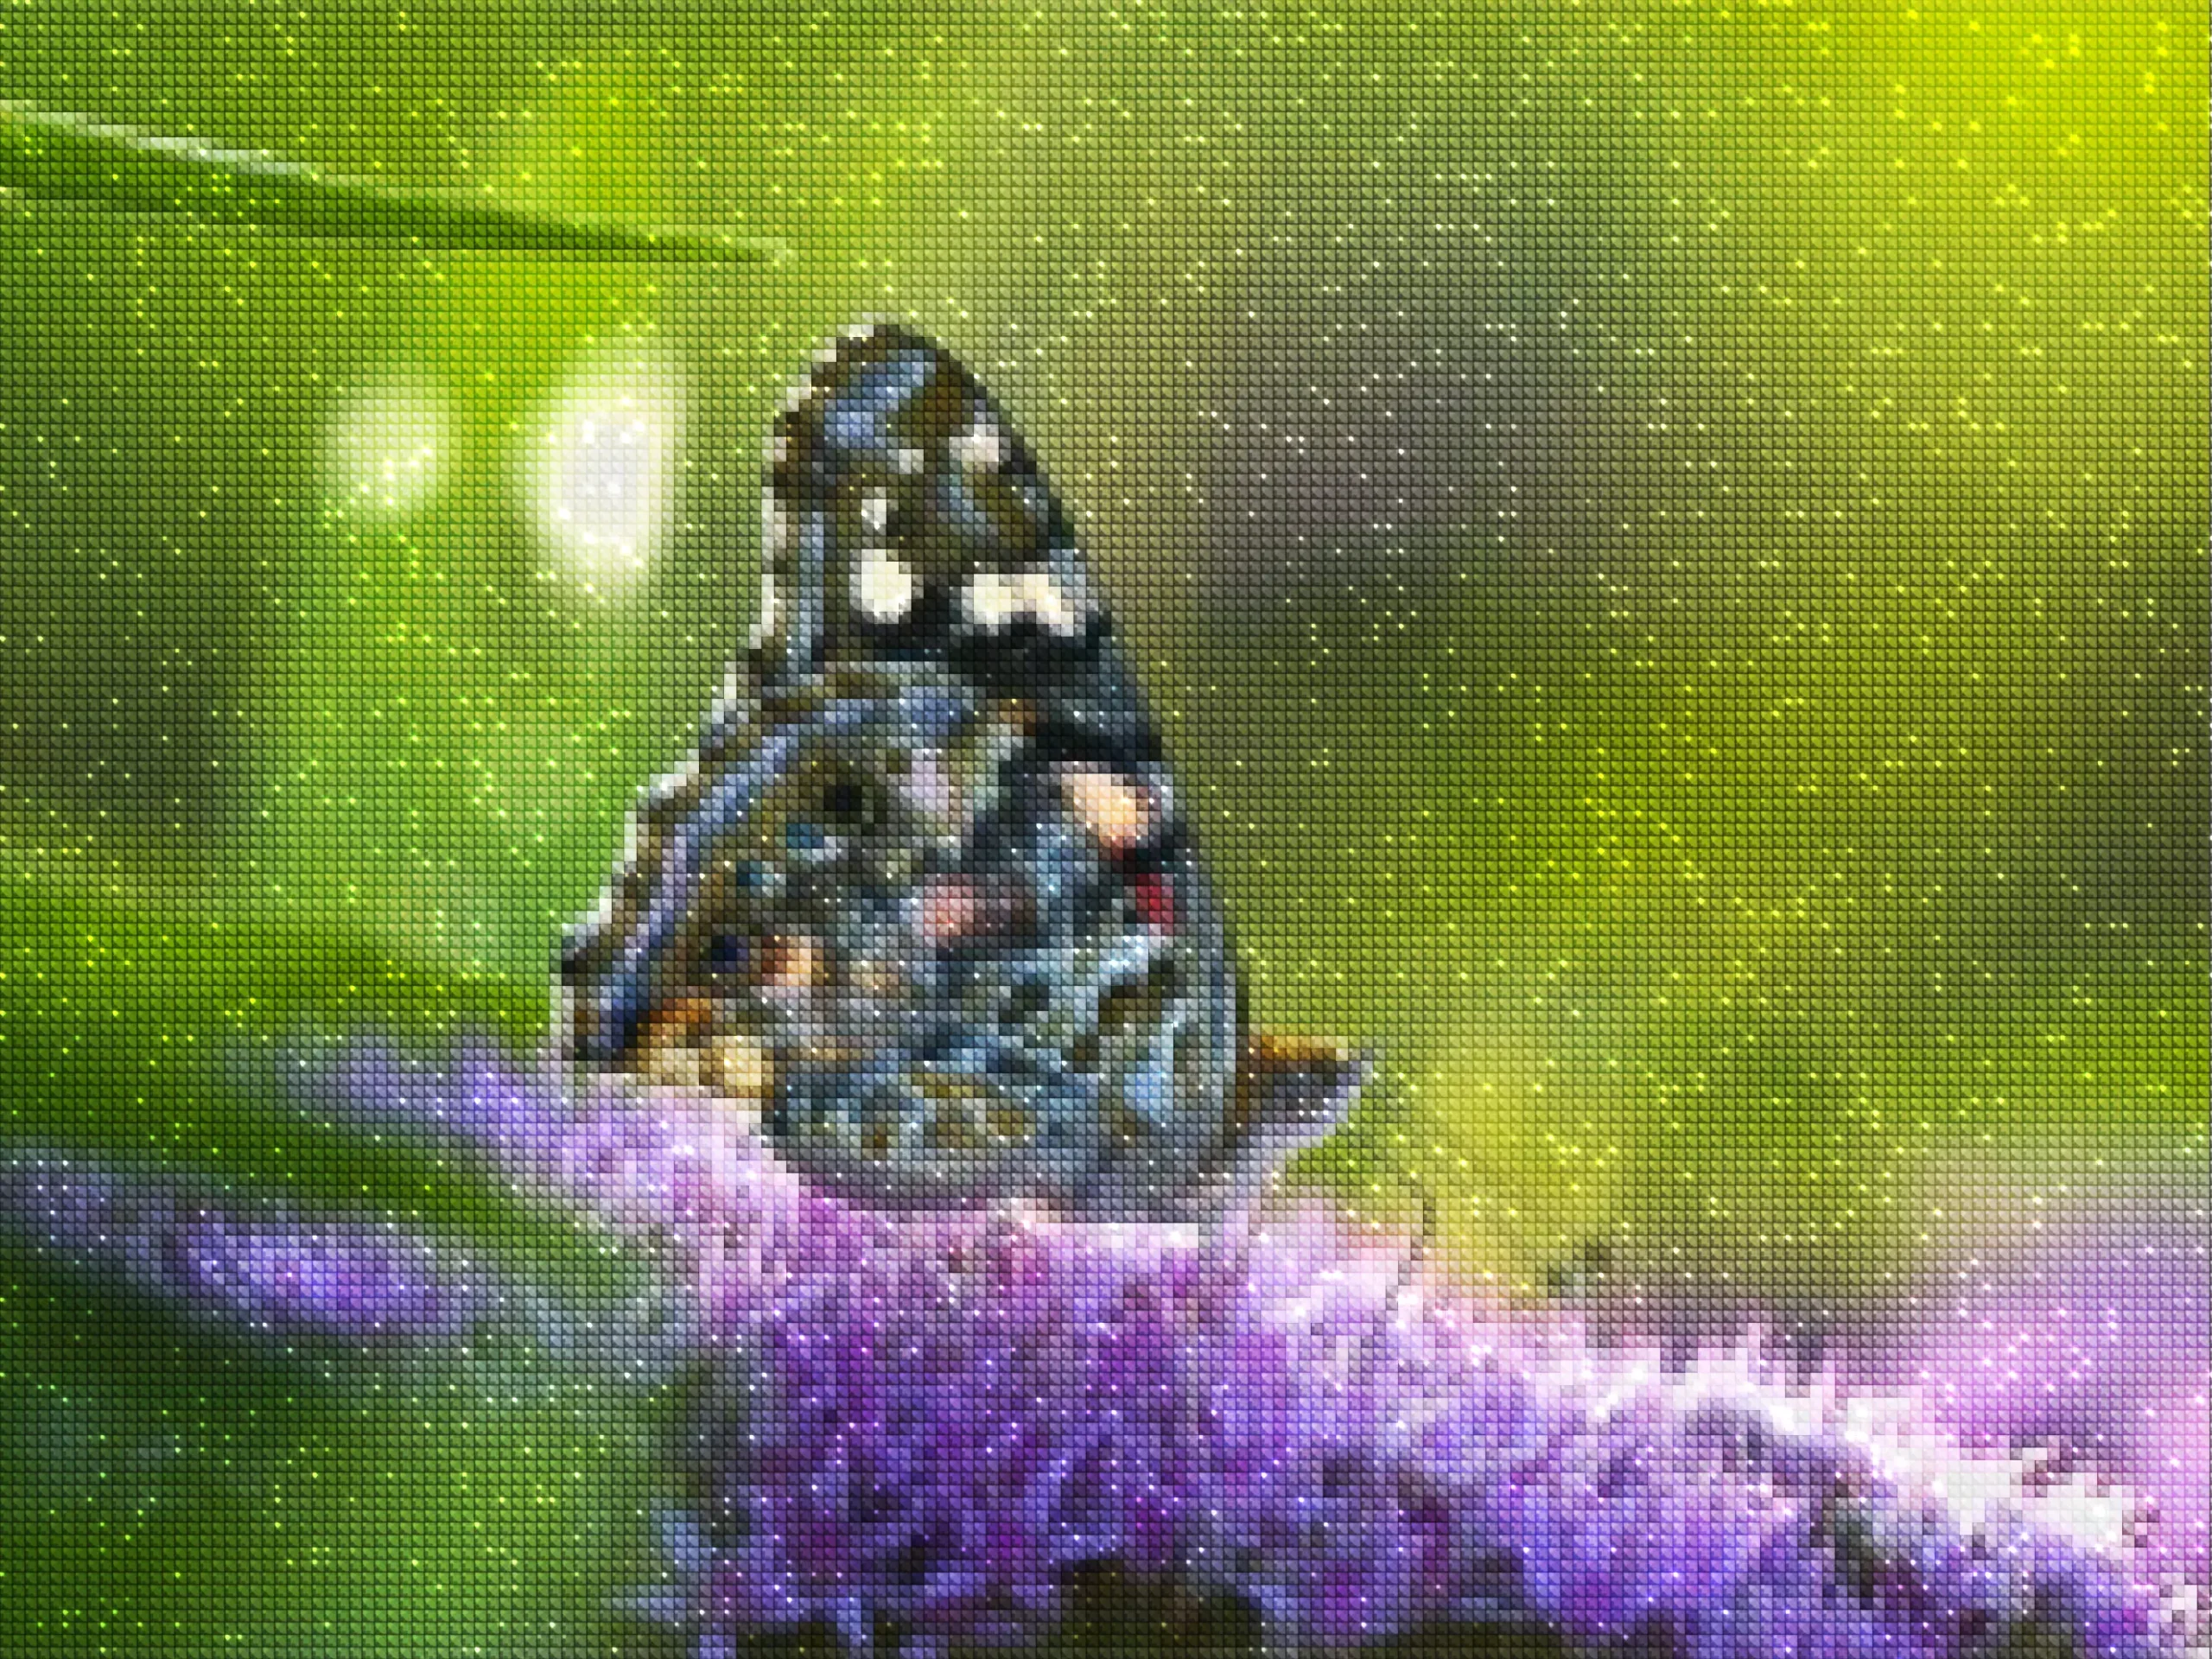 diamanten-tovenaar-diamant-schilderpakketten-dieren-vlinder-de vlinder op de paarse bloem-diamonds.webp